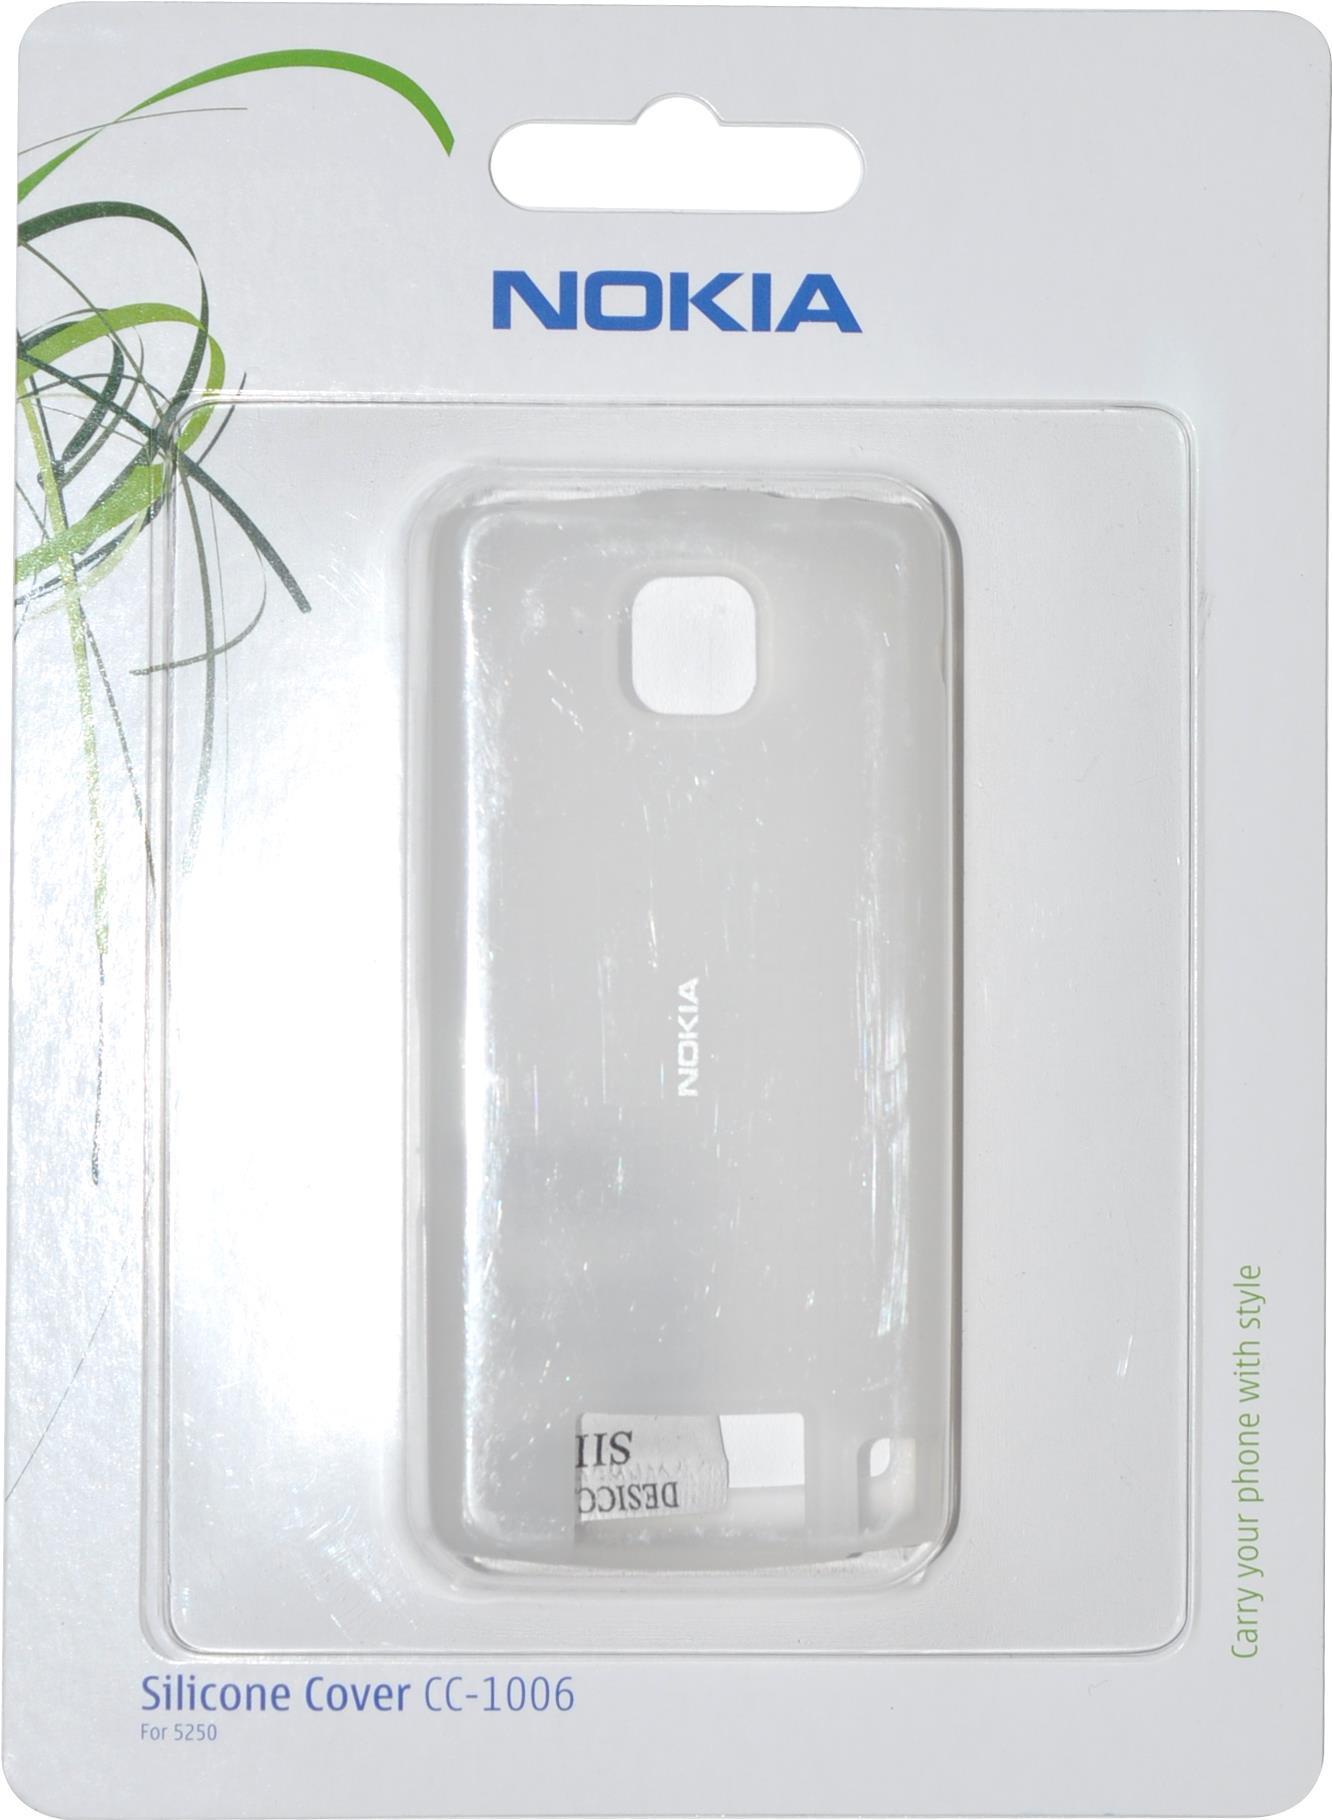 Nokia Silicon Cover CC-1006, Nokia 5250, clear, Blister (CC-1006)